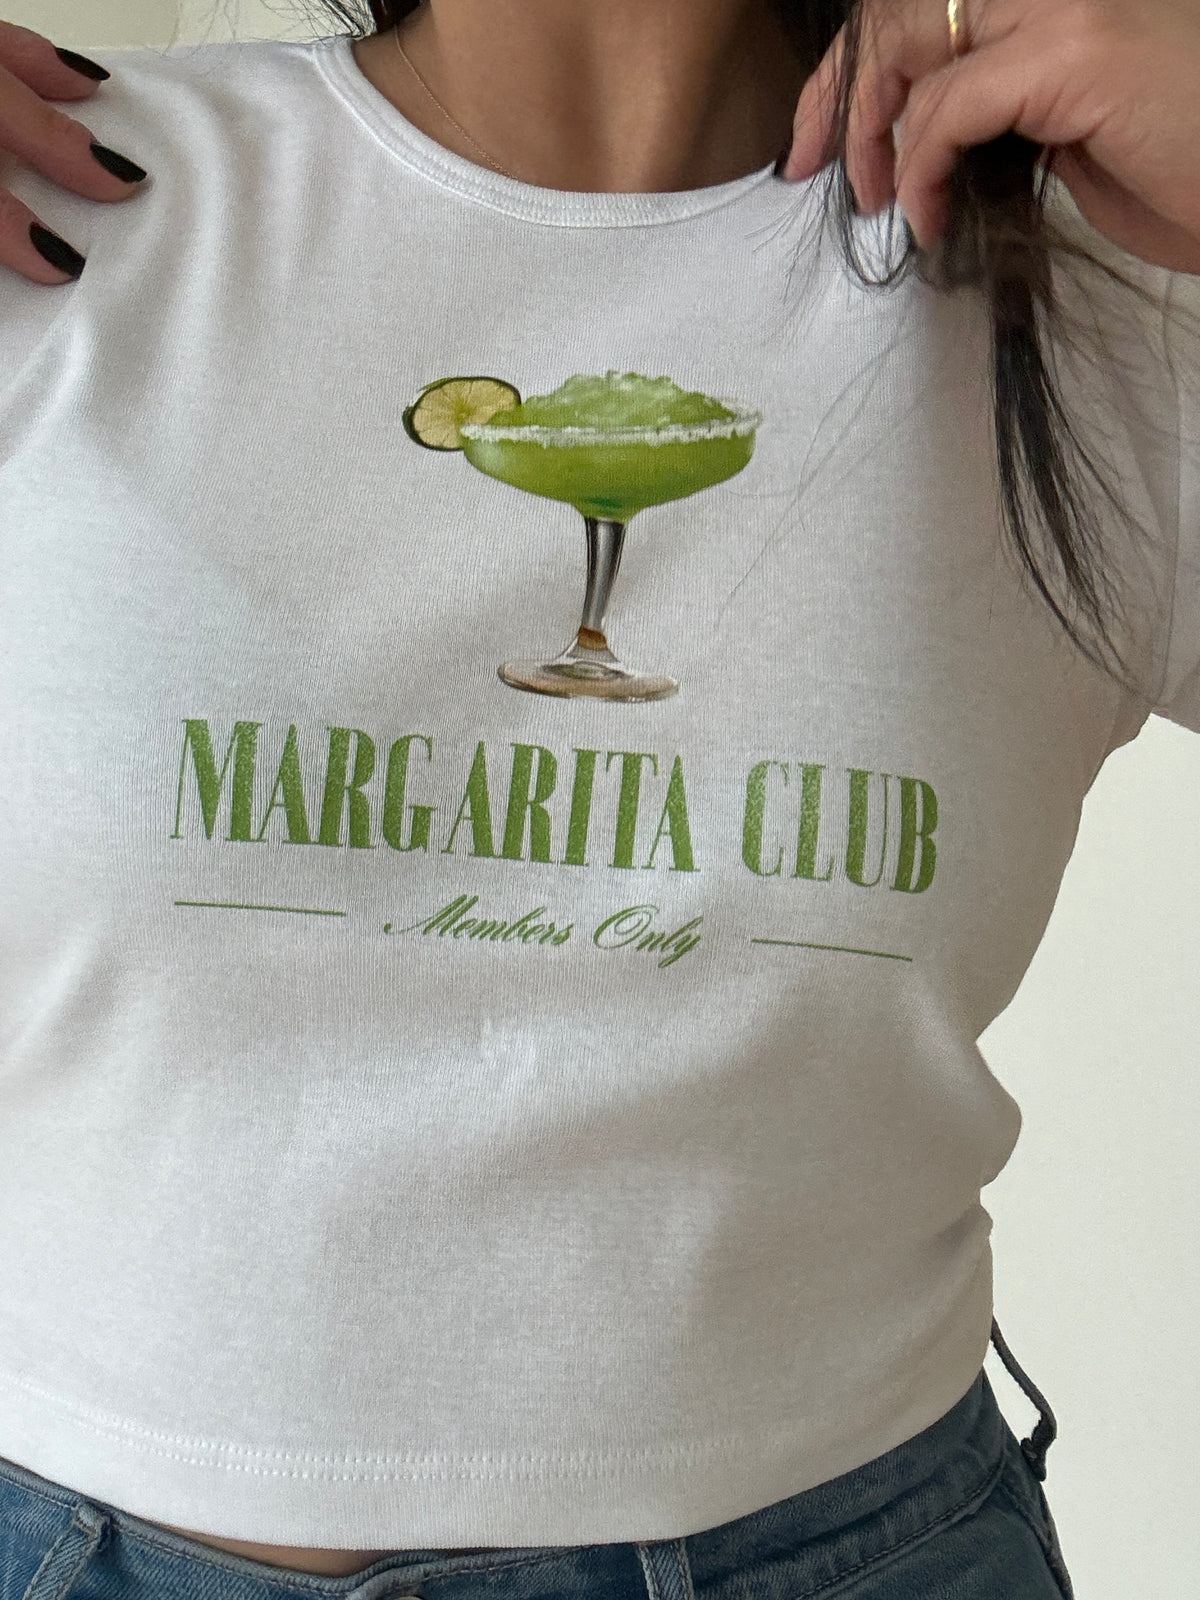 Margarita Club  Baby Tee - White